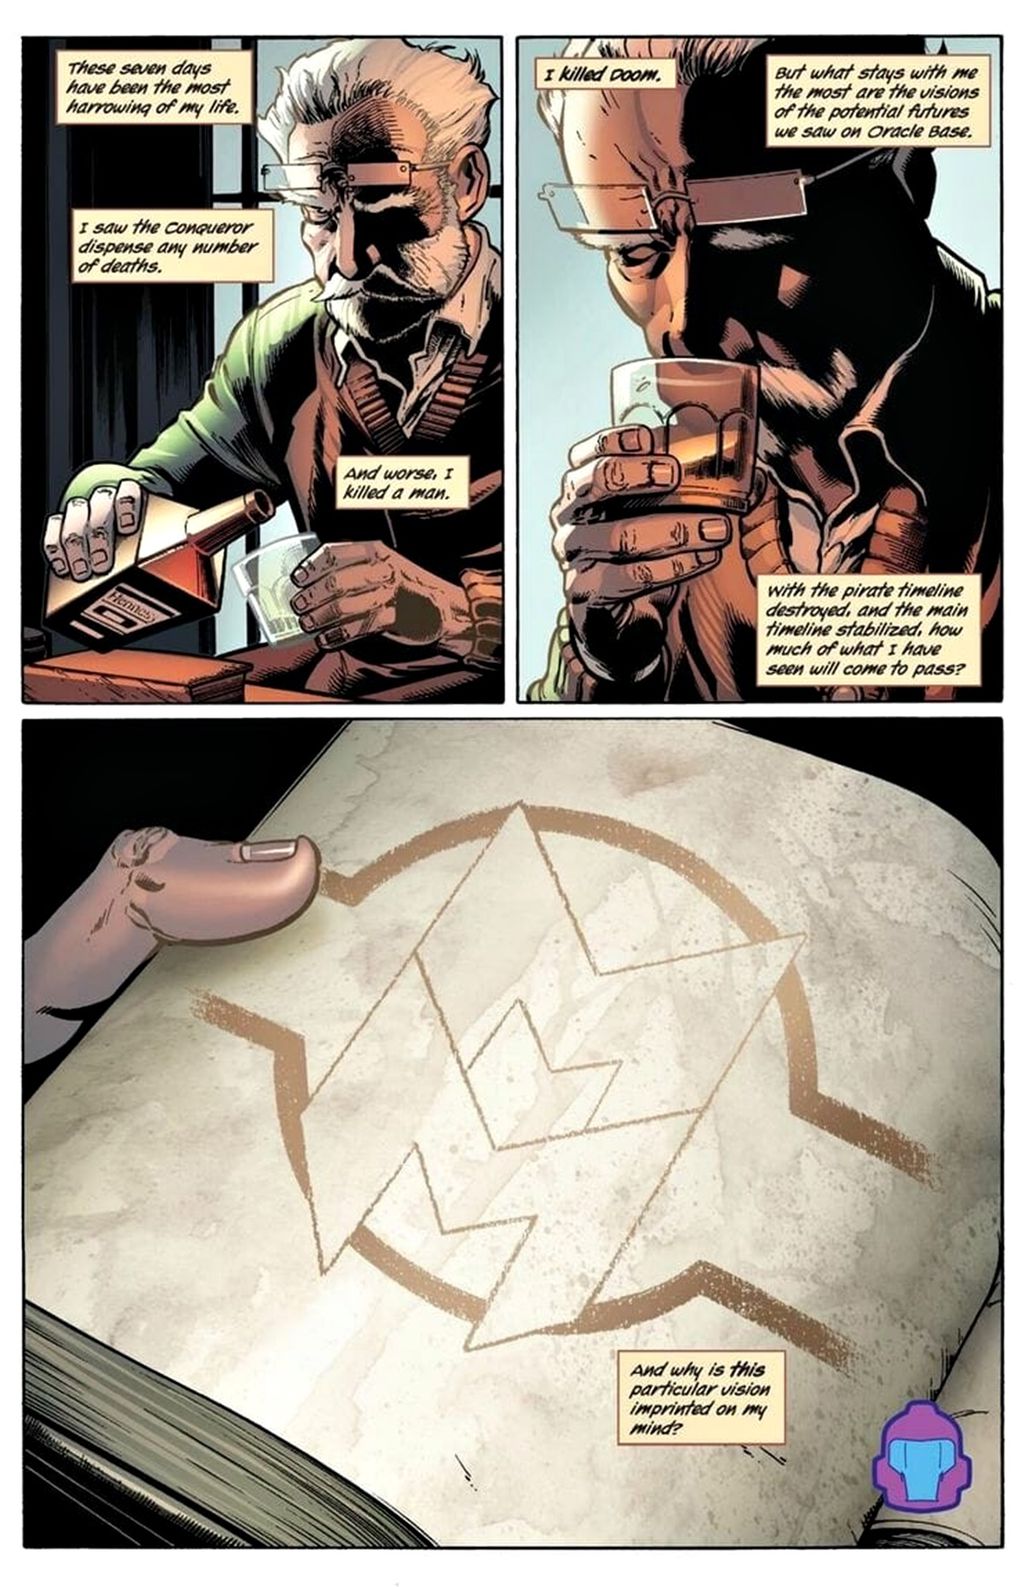 Símbolo de Miracleman apareceu na primeira edição de Timeless (Imagem: Reprodução/Marvel Comics)